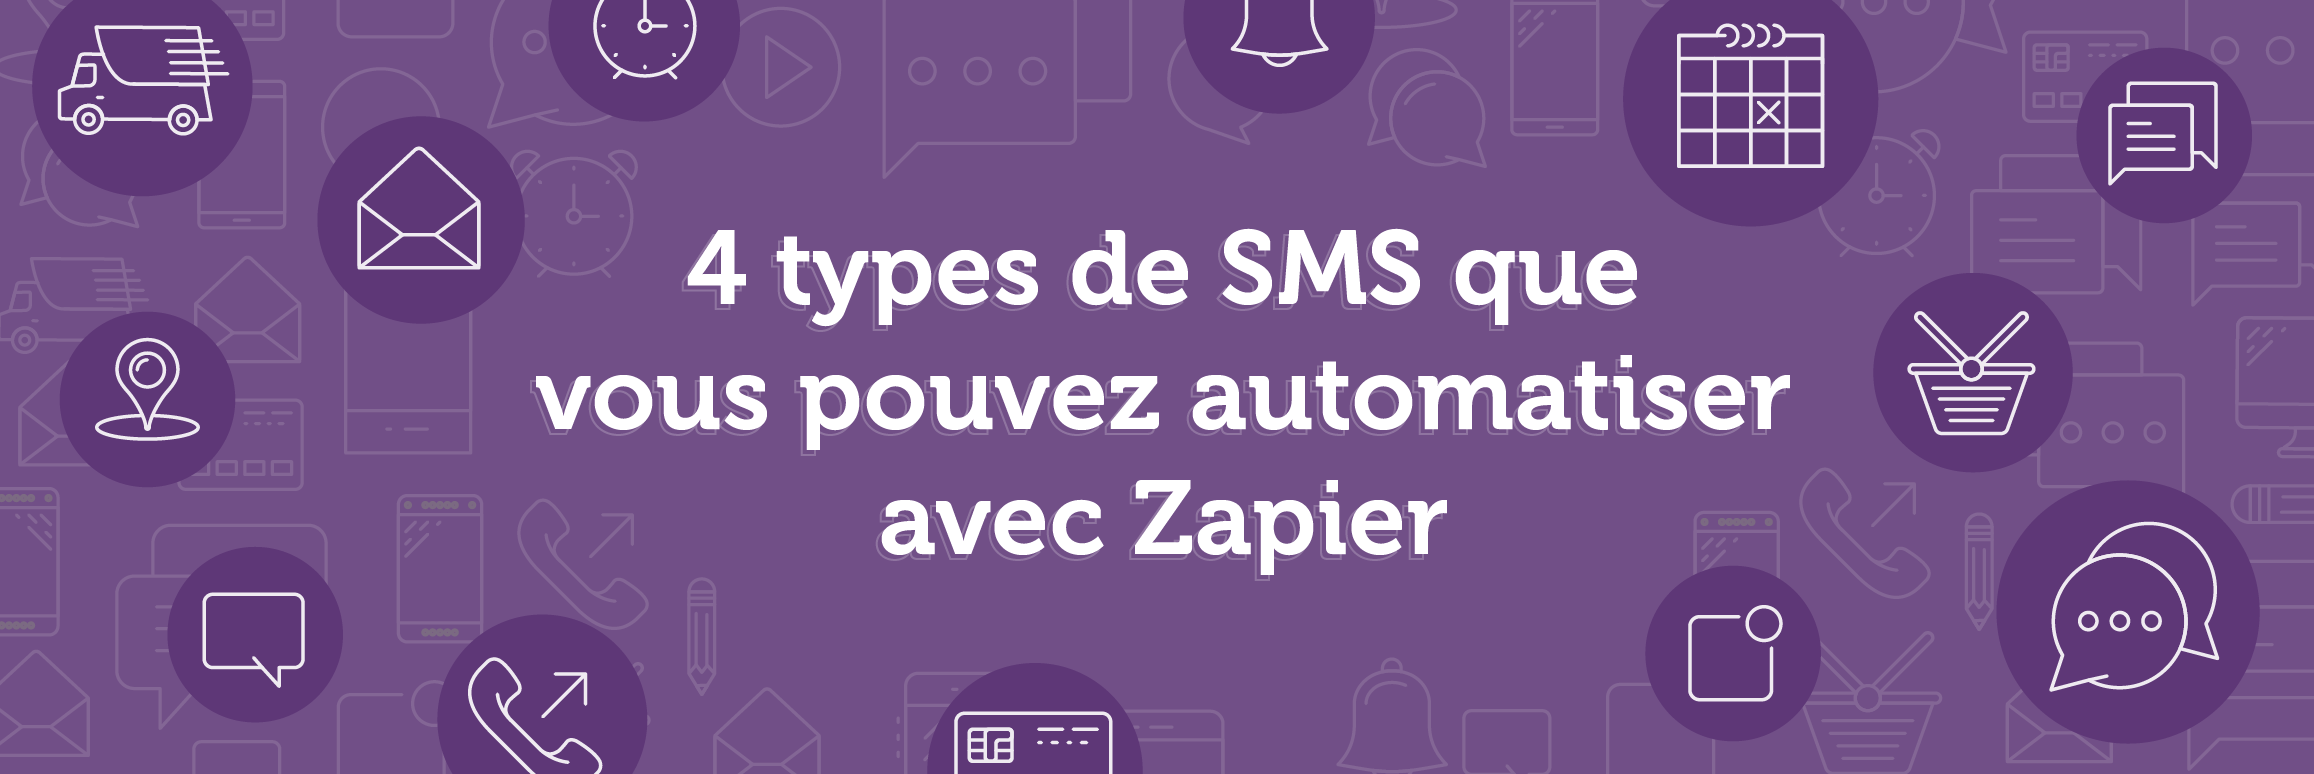 4 types de SMS à automatiser avec Zapier